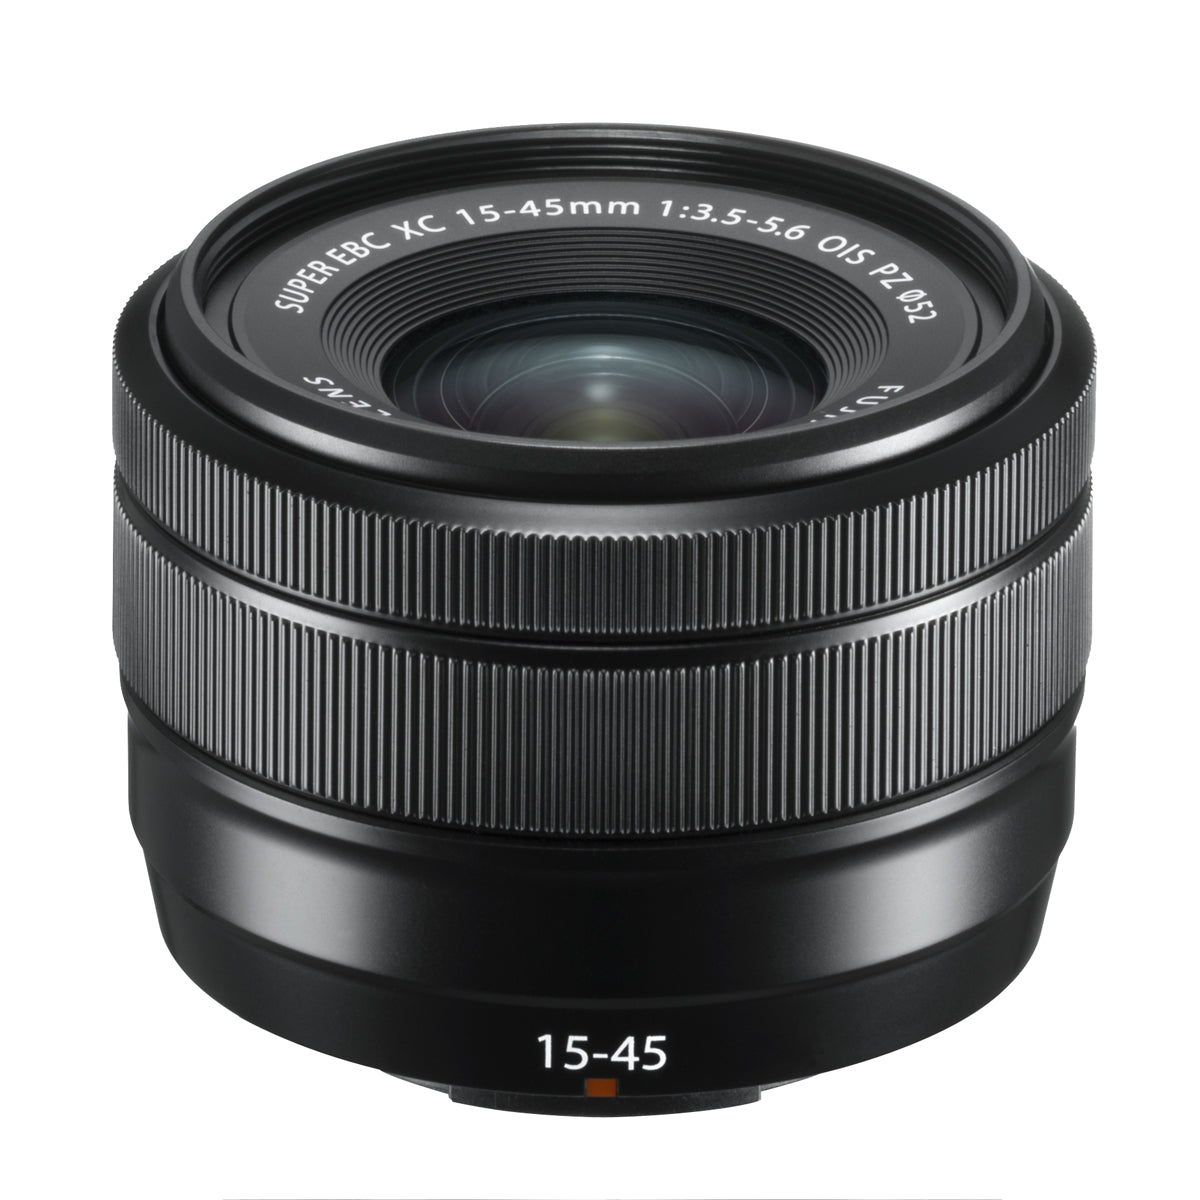 Fujifilm XC 15-45mm f3.5-5.6 OIS PZ Lens